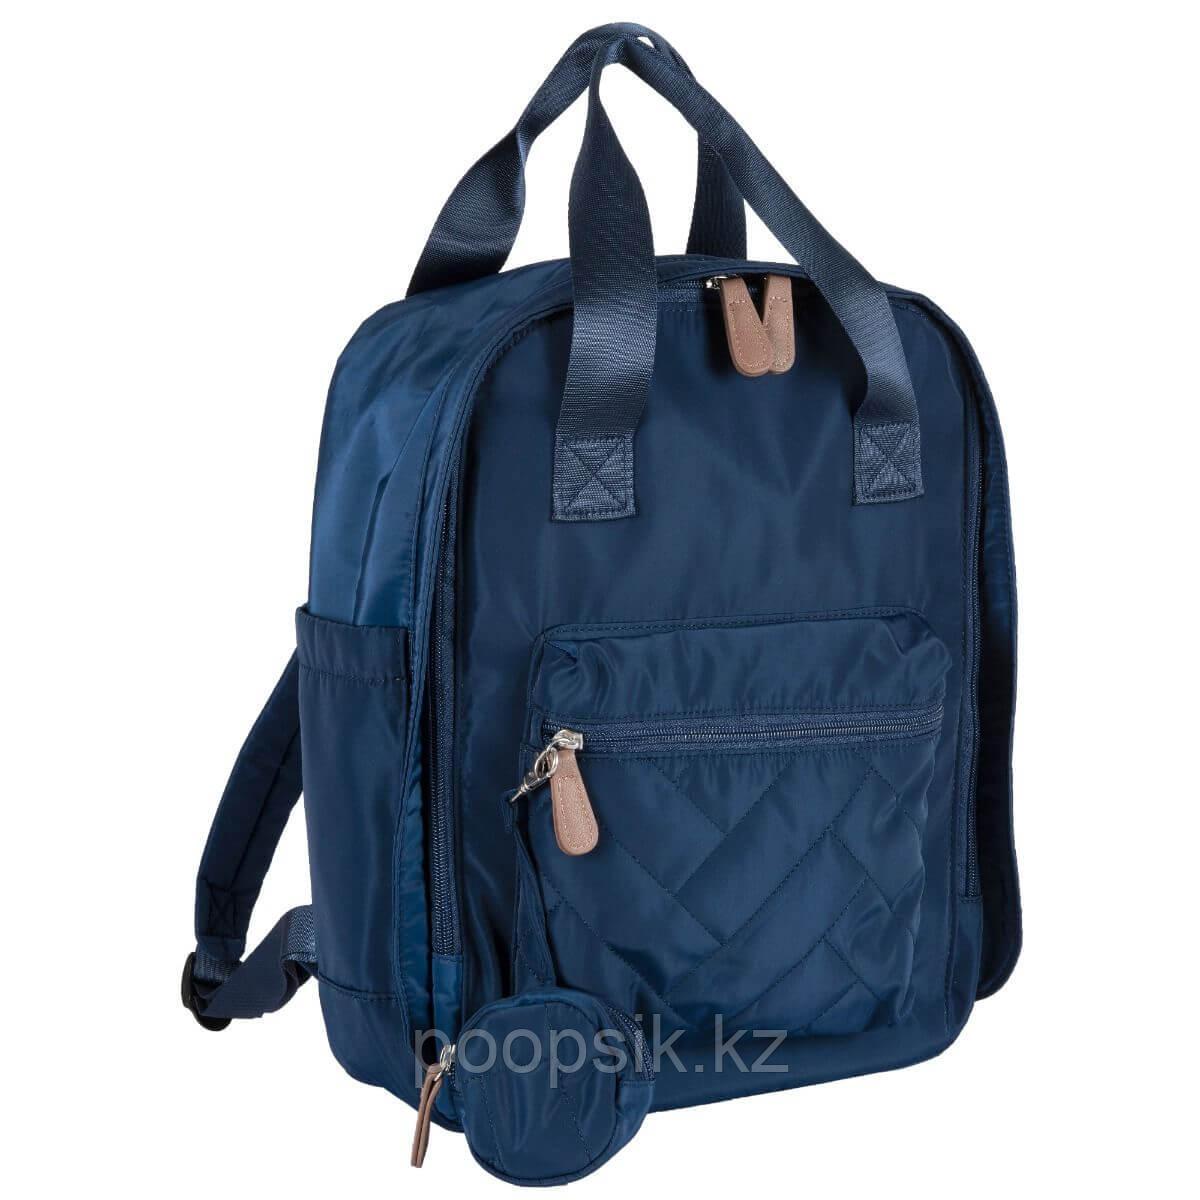 Сумка-рюкзак для мамы синяя 2020 Осень-Зима, Chicco